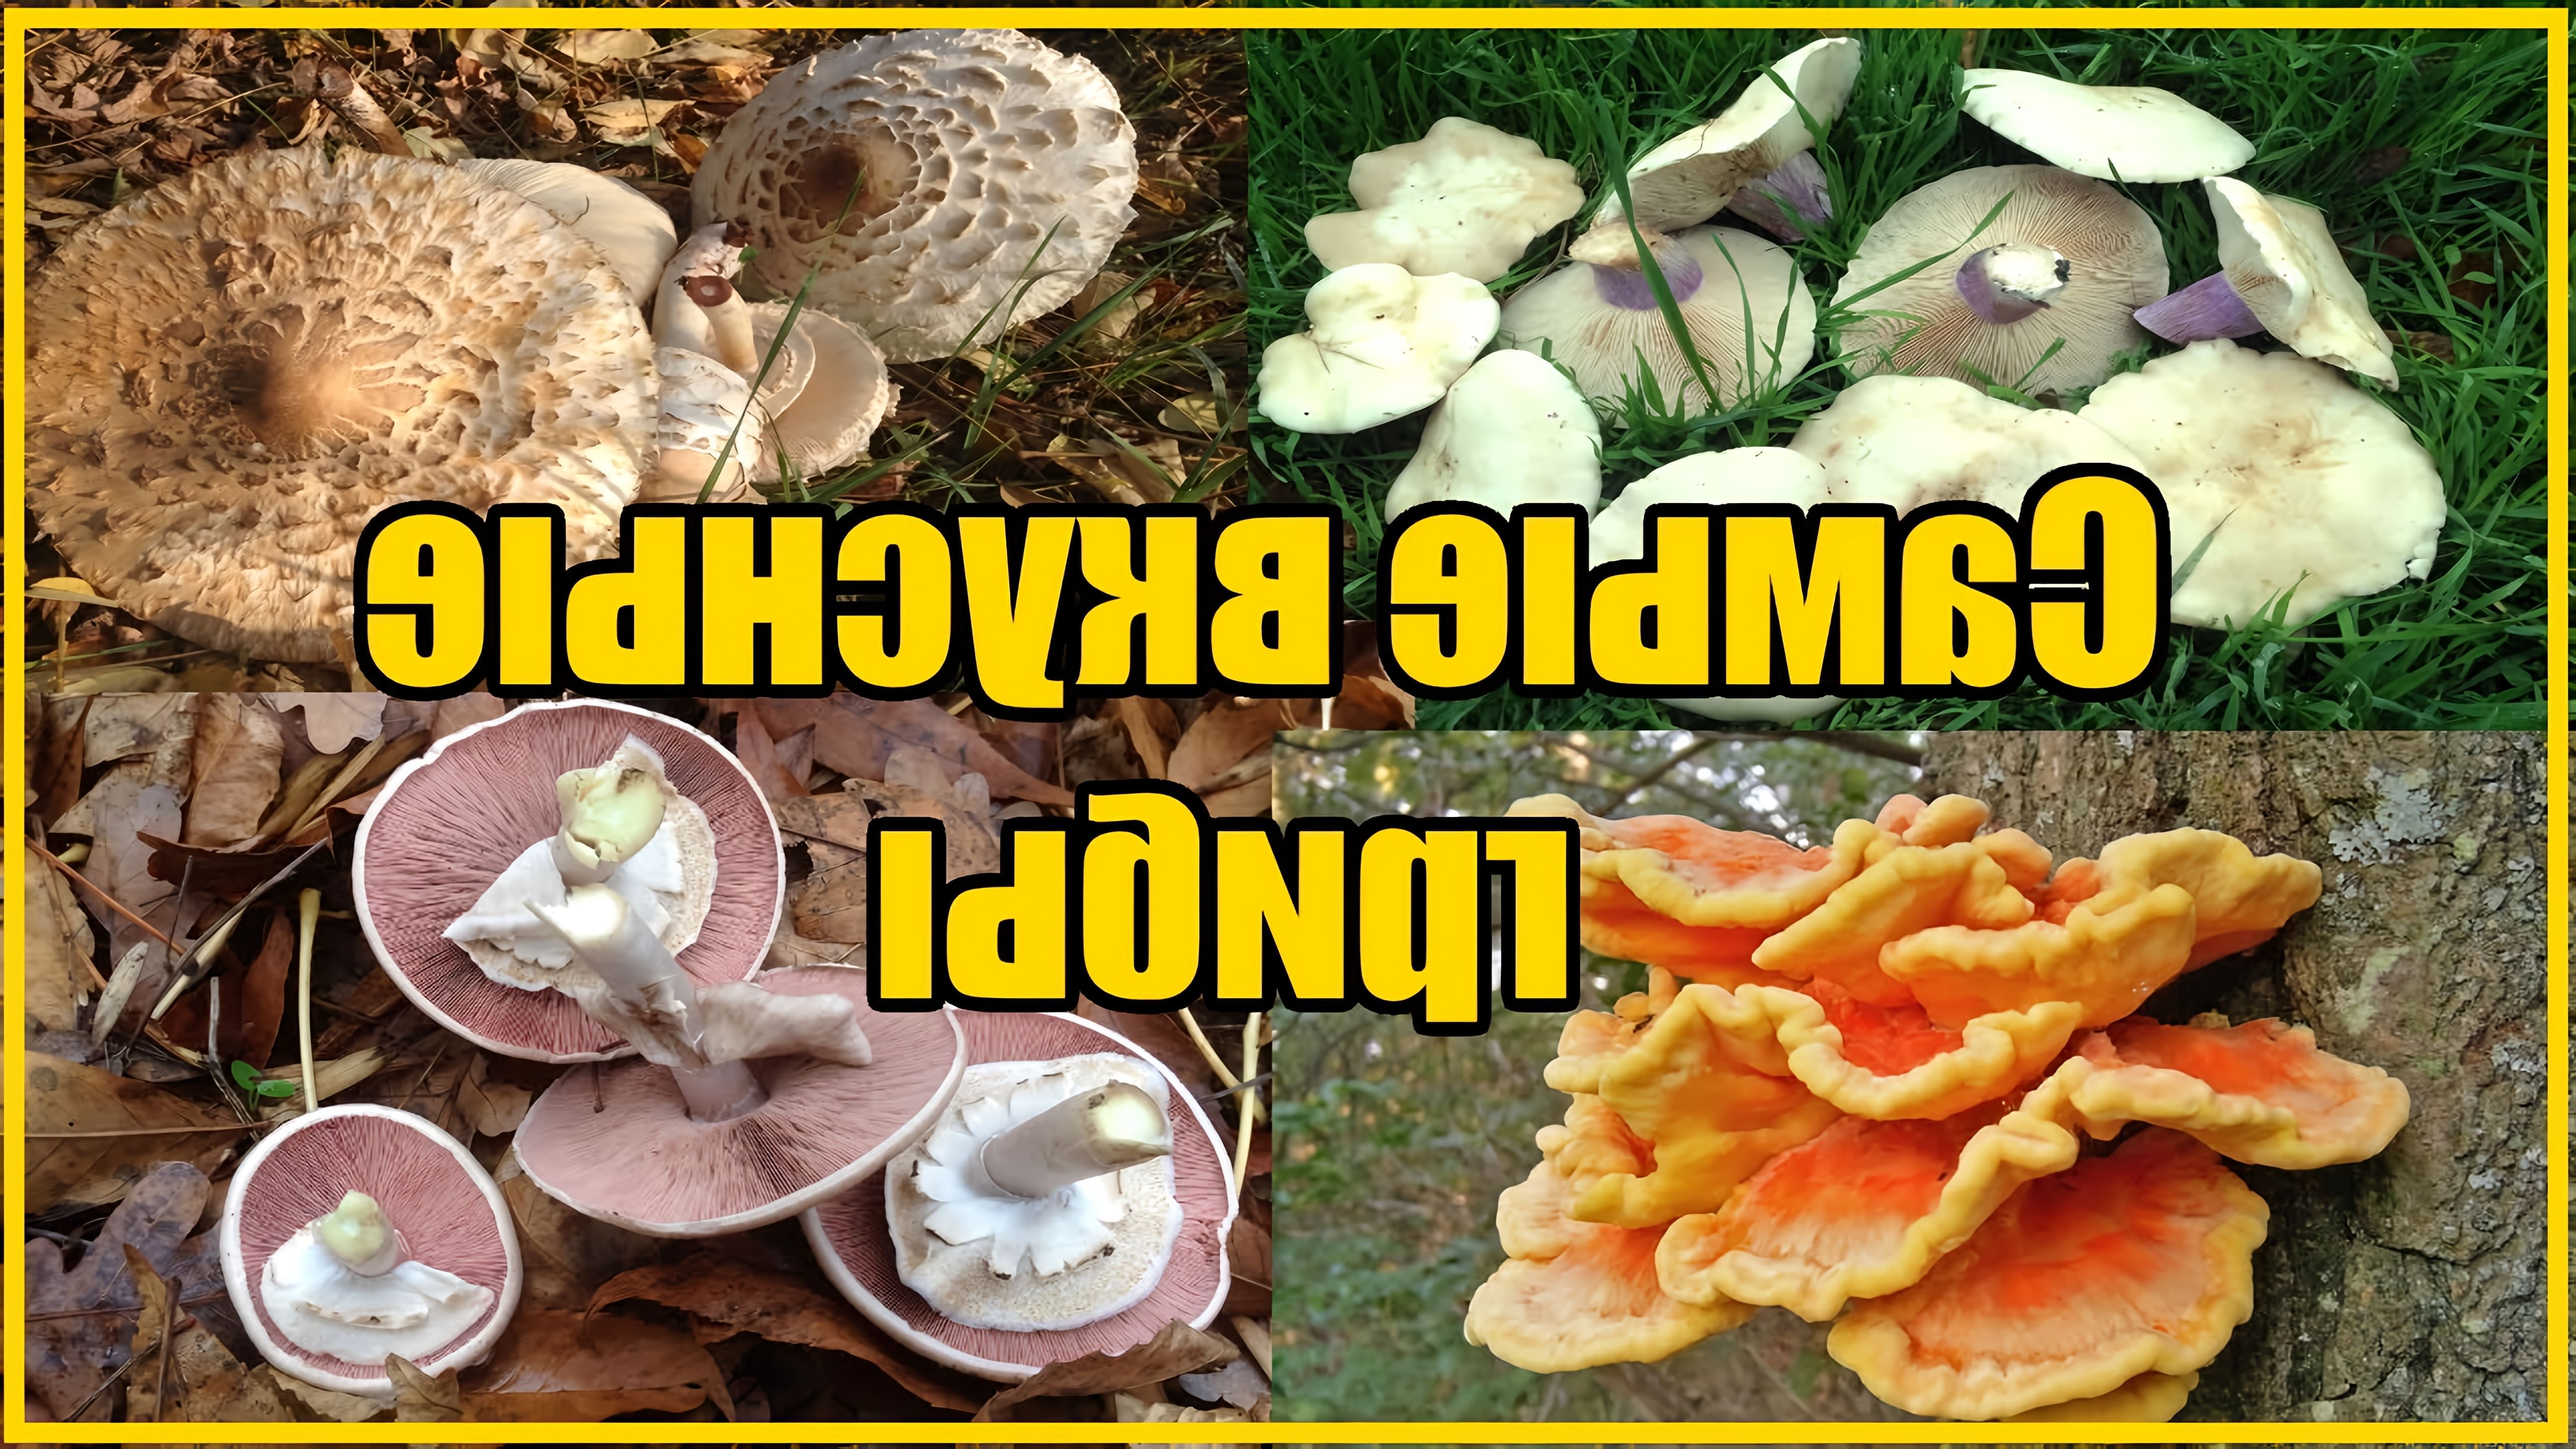 В этом видео рассказывается о видах грибов, которые можно встретить осенью в лесу